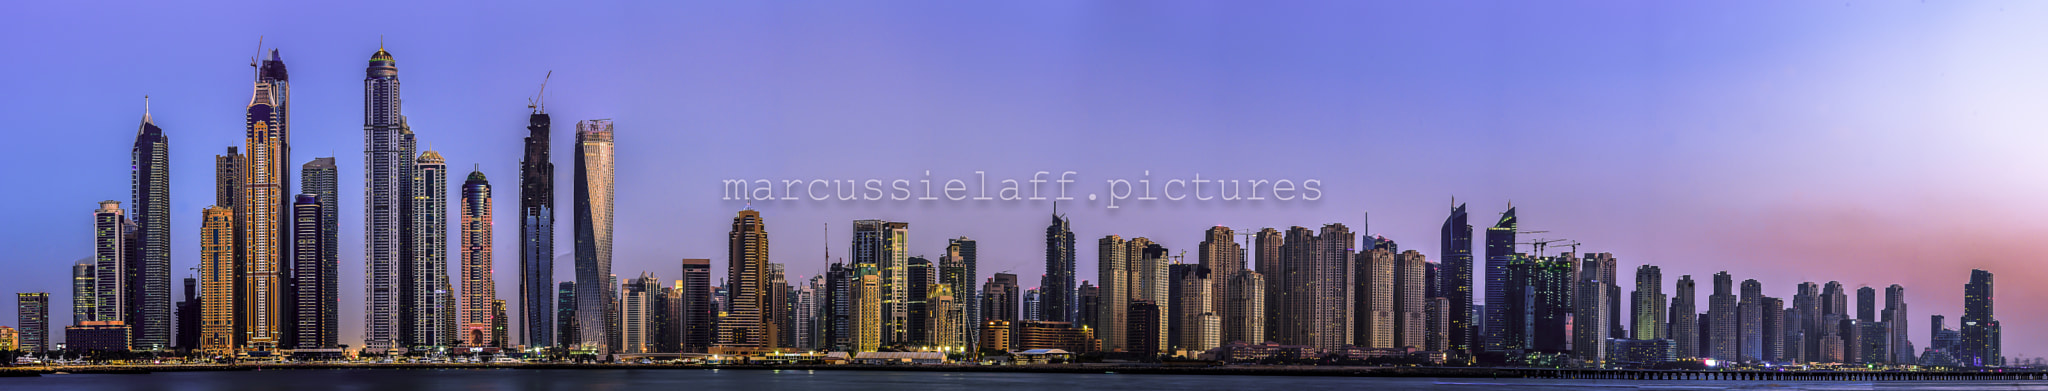 Pentax K-5 + Tamron SP AF 70-200mm F2.8 Di LD (IF) MACRO sample photo. Dubai skyline photography